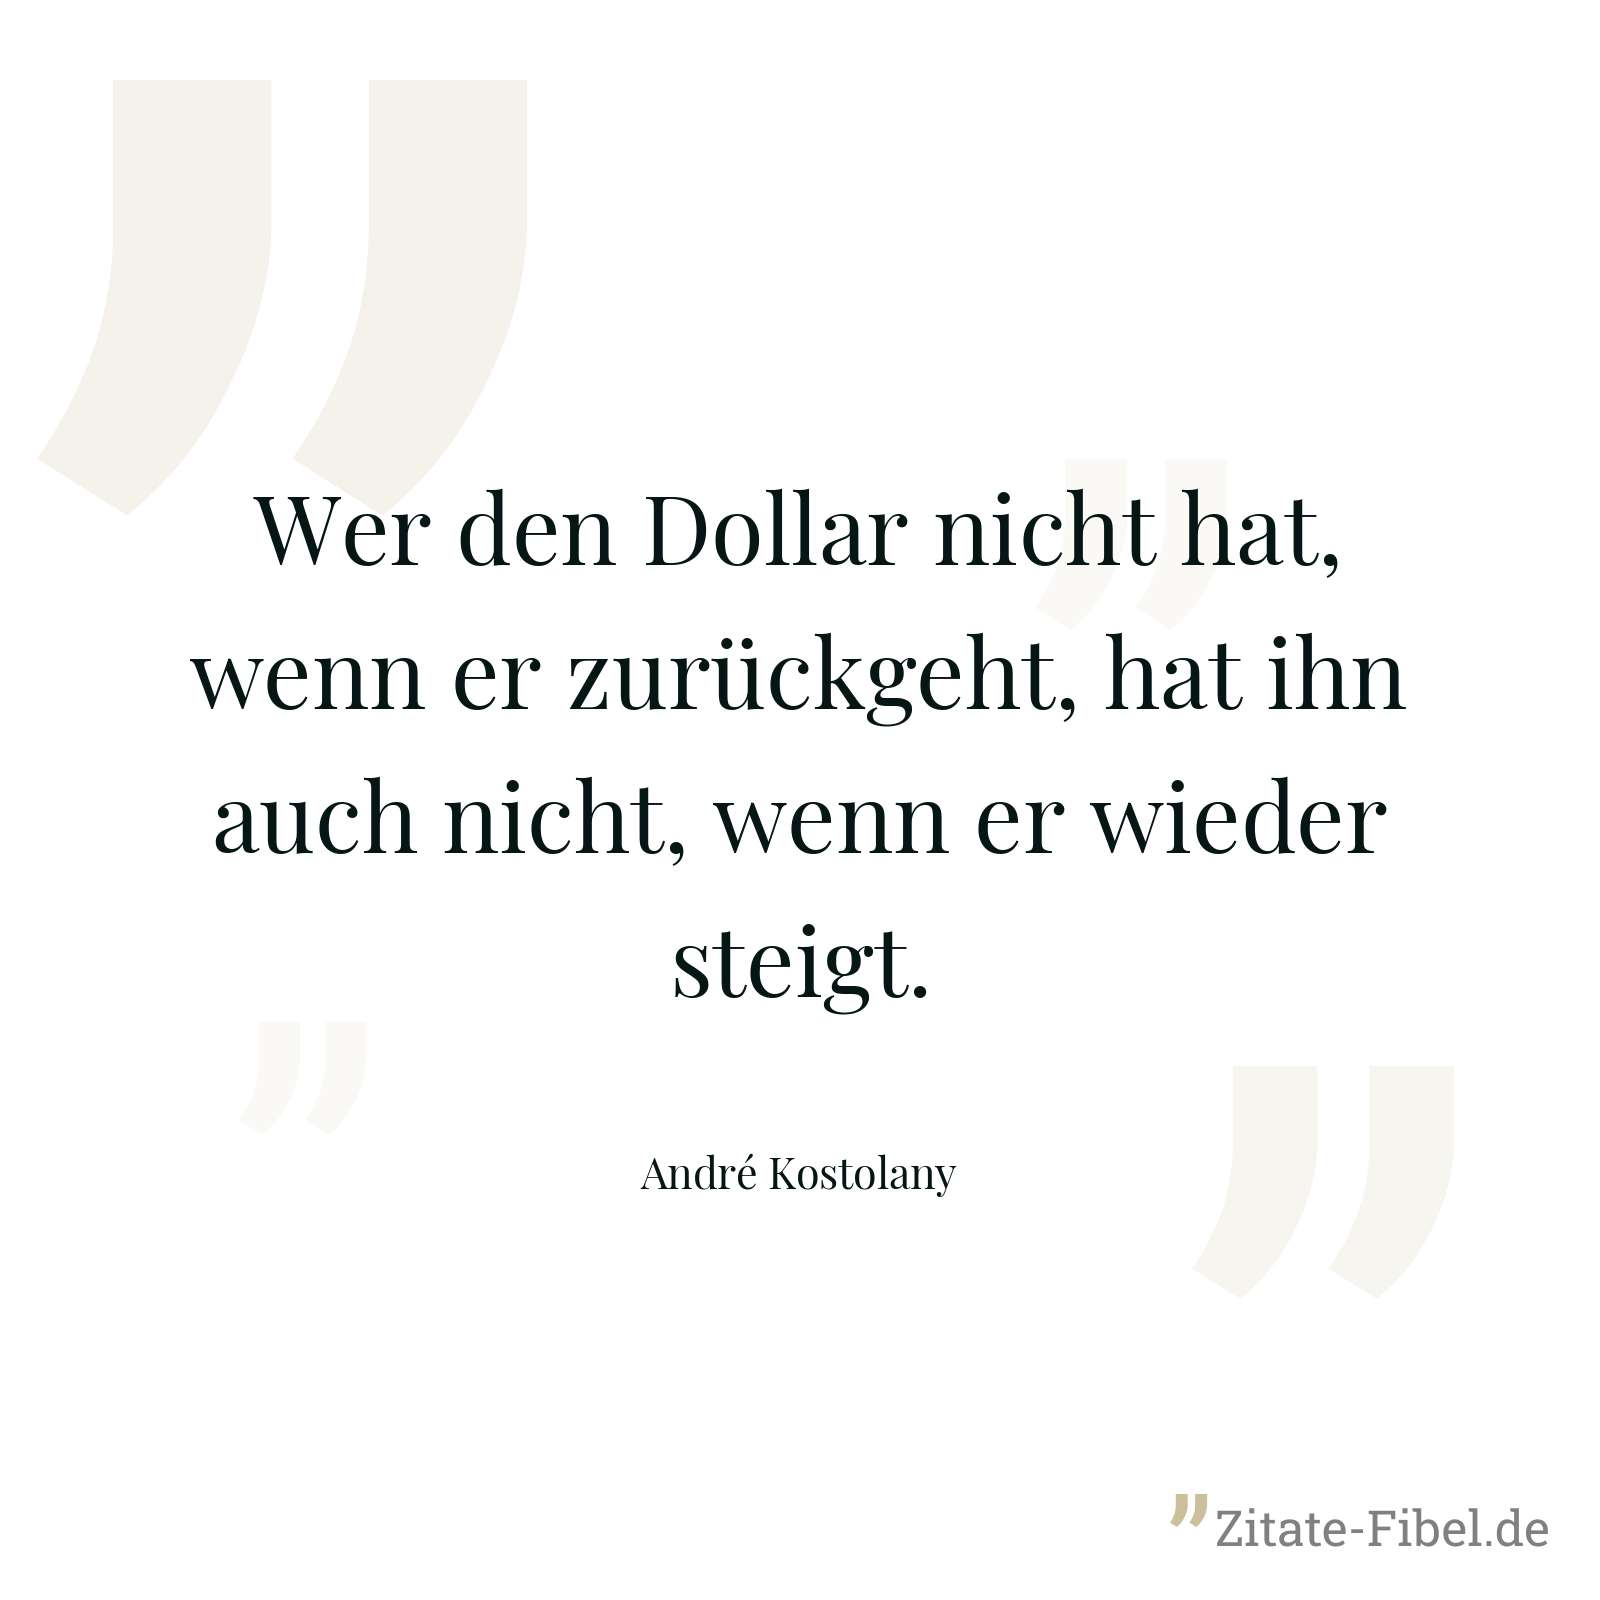 Wer den Dollar nicht hat, wenn er zurückgeht, hat ihn auch nicht, wenn er wieder steigt. - André Kostolany